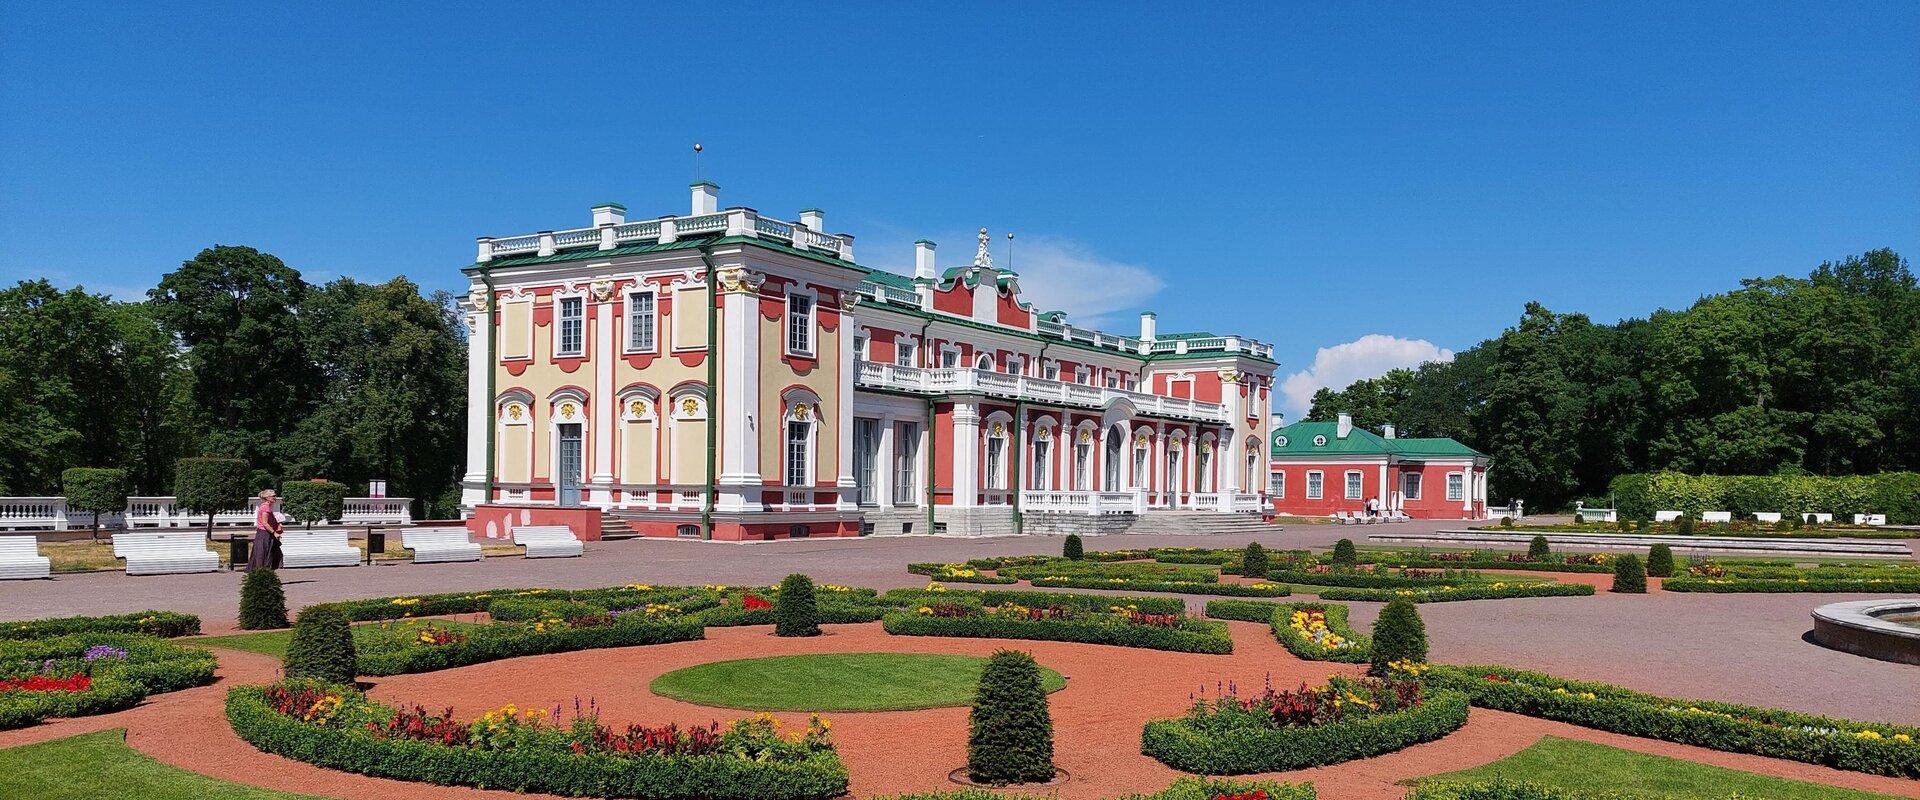 Das Schloss Kadriorg errichtete der russische Zar Peter I. im Jahr 1718. Es wurde zu Ehren seiner Frau Katharina I. Catharinenthal (est. Kadriorg, rus